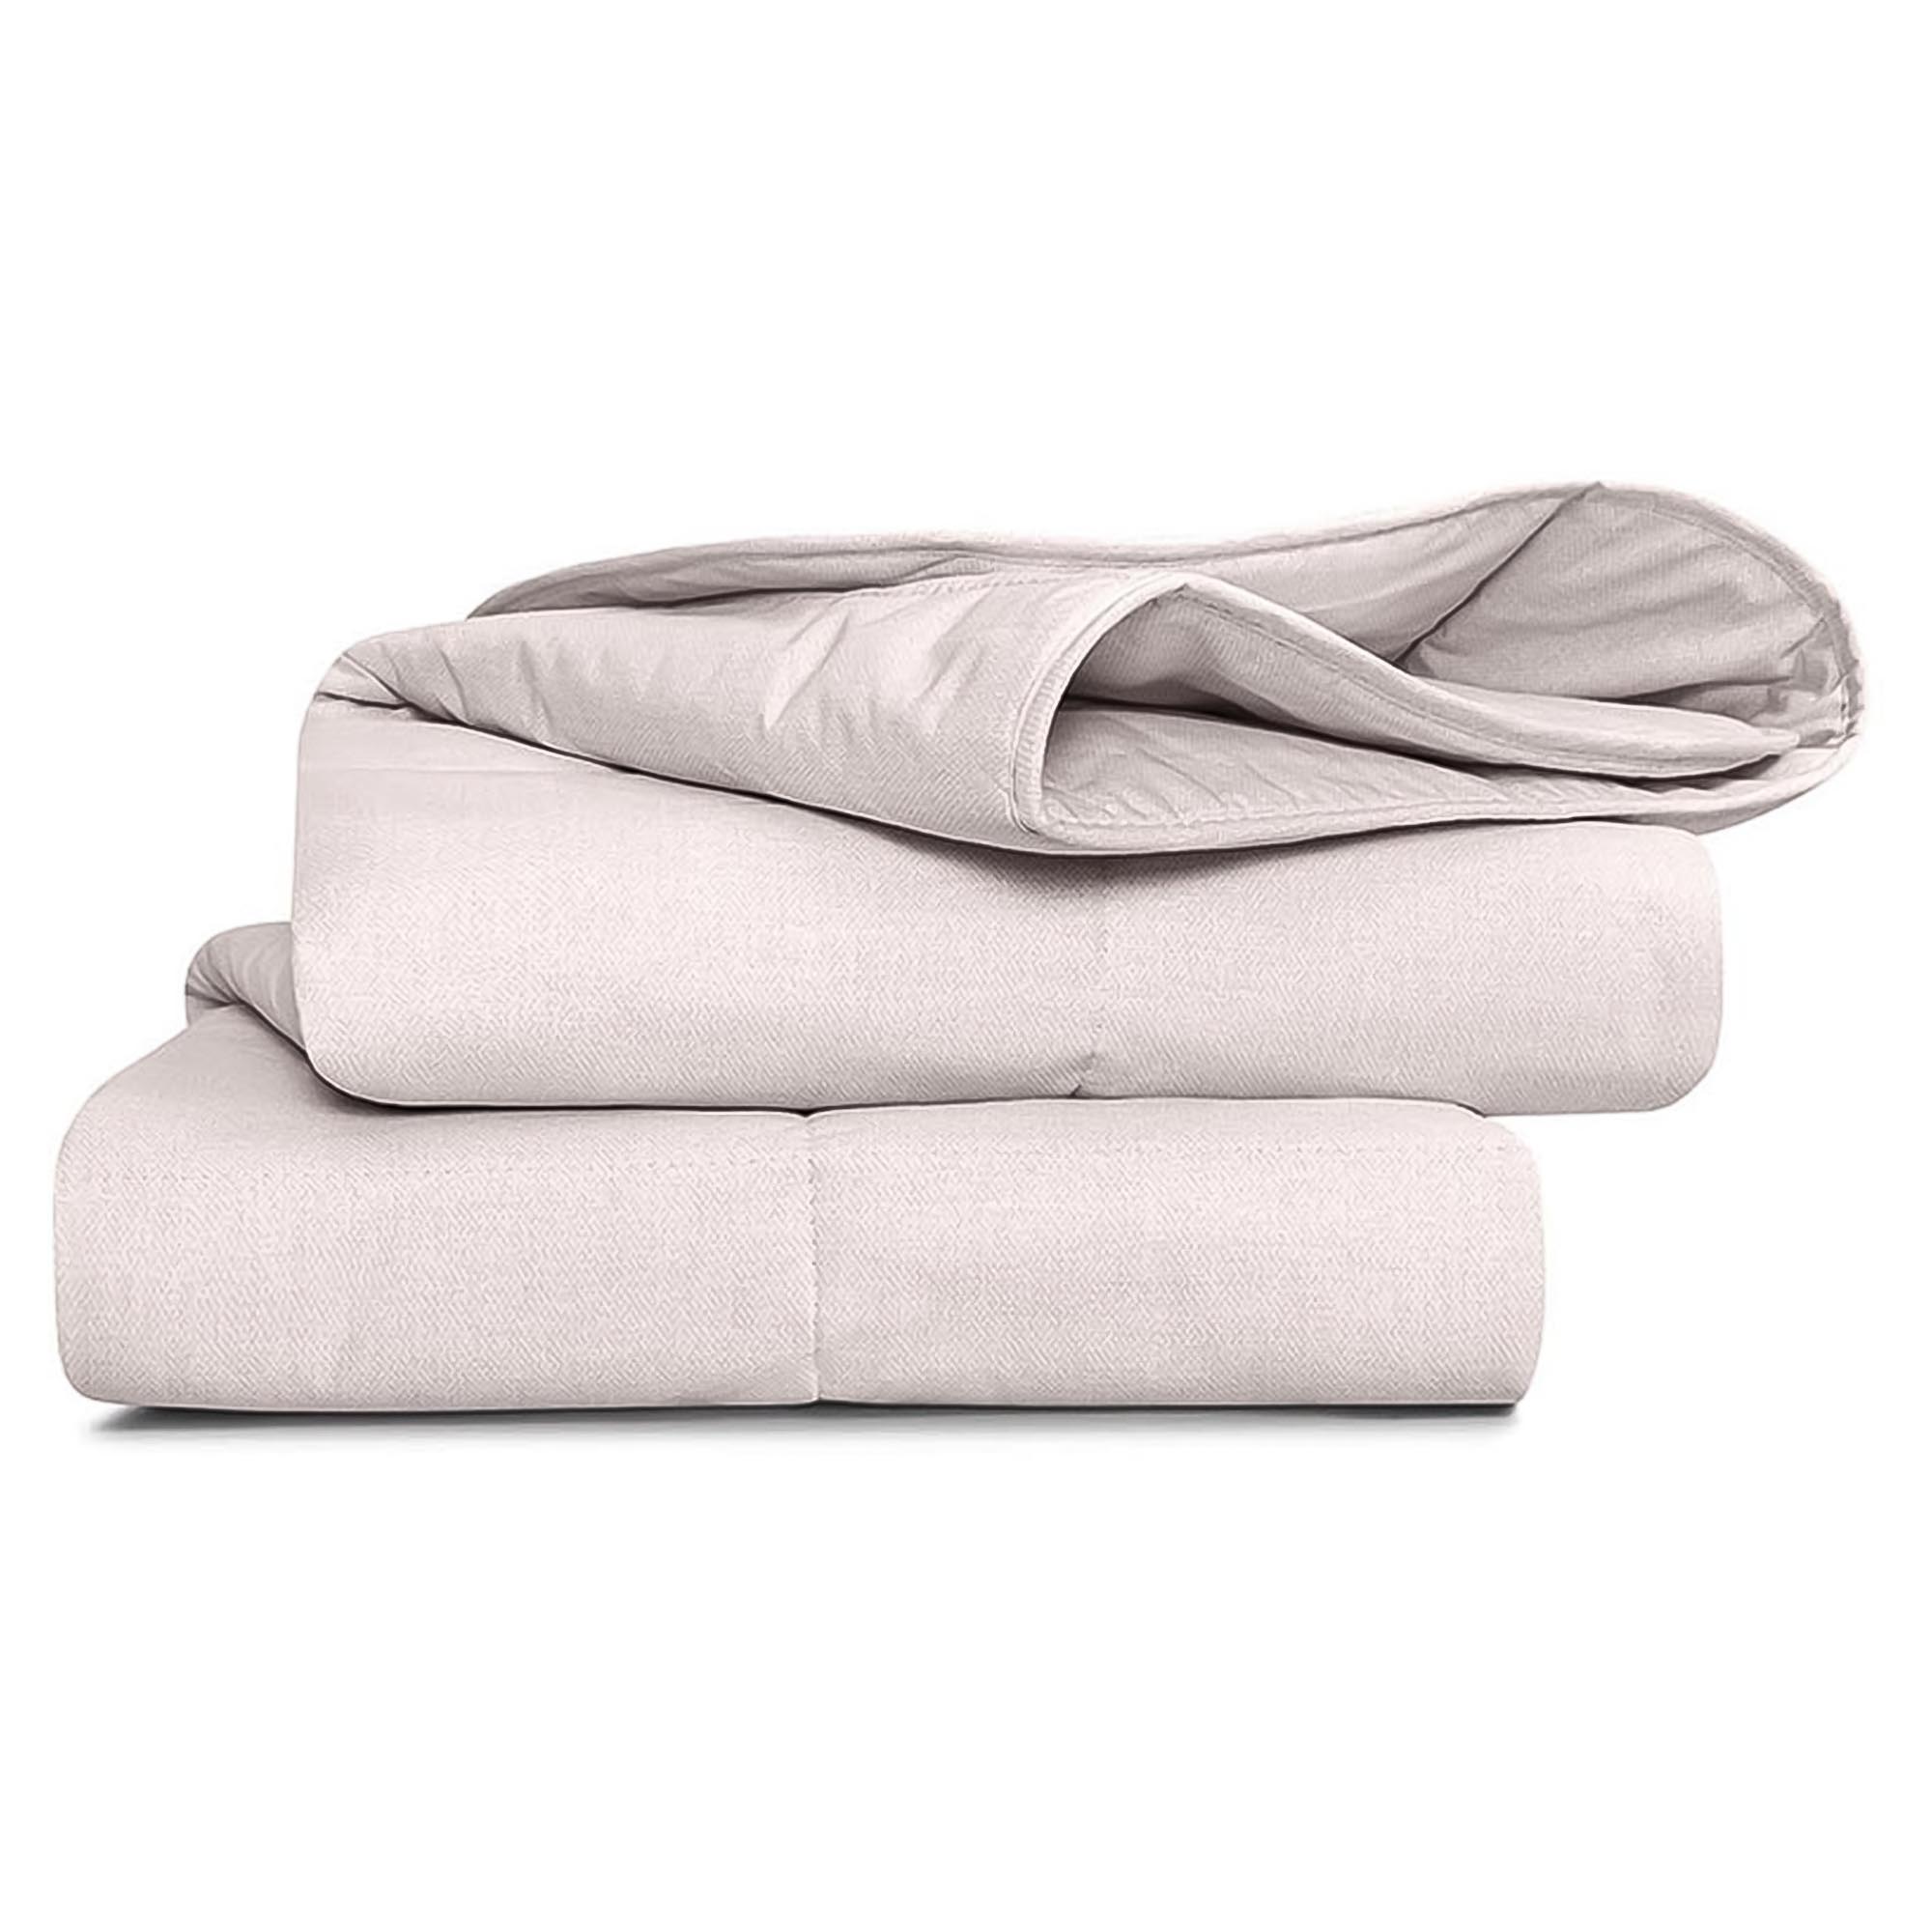 Одеяло Medsleep Sonora белое 200х210 см